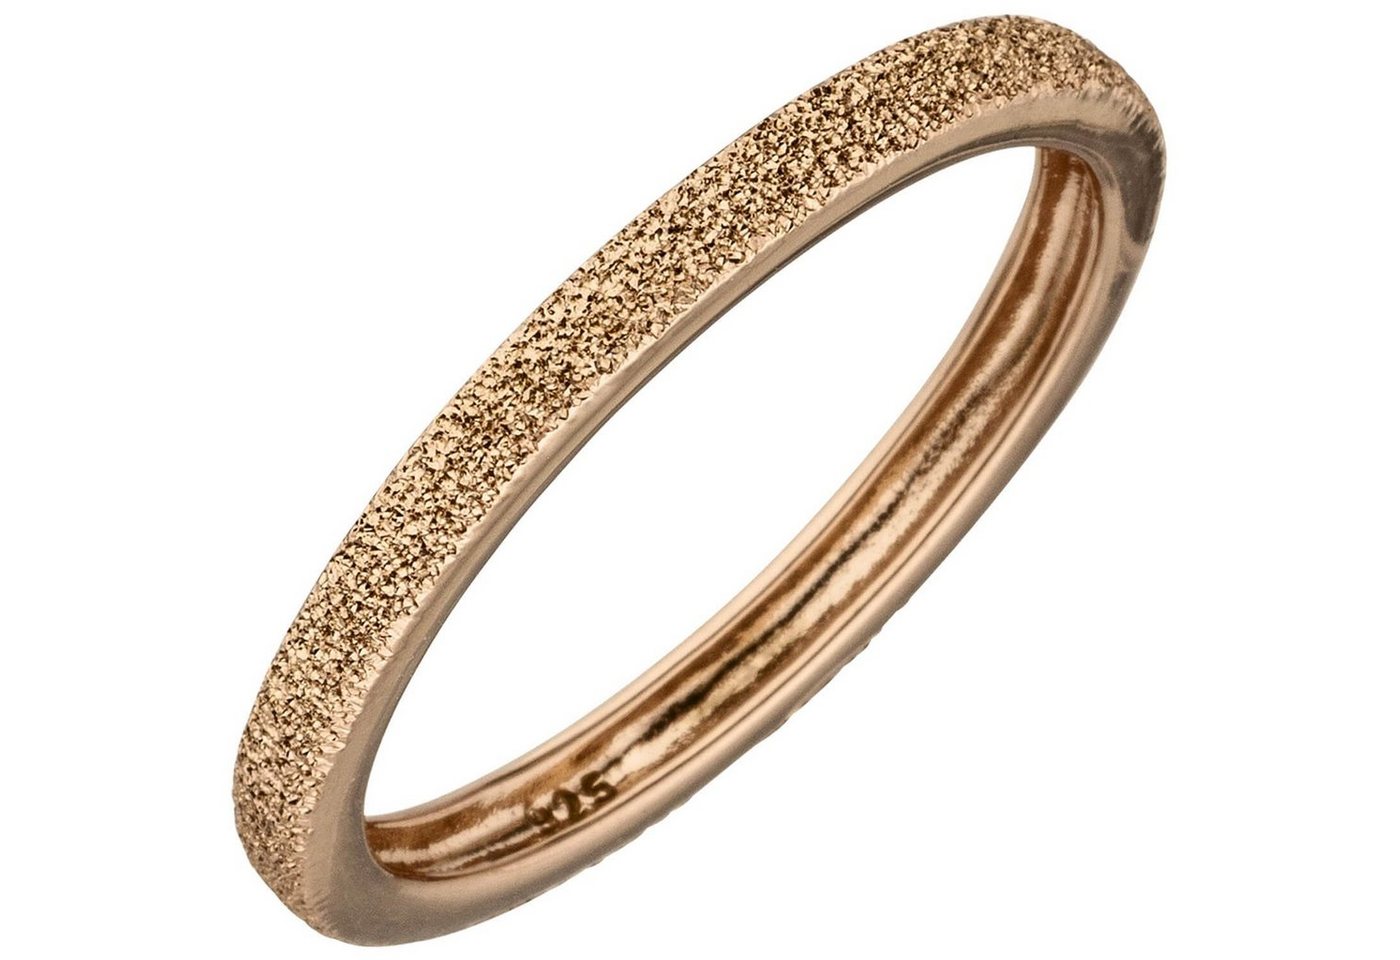 Schmuck Krone Silberring Ring 925 Silber rotgold vergoldet mit Sternenstaub Struktur flach 2,2mm schmal, Silber 925 von Schmuck Krone